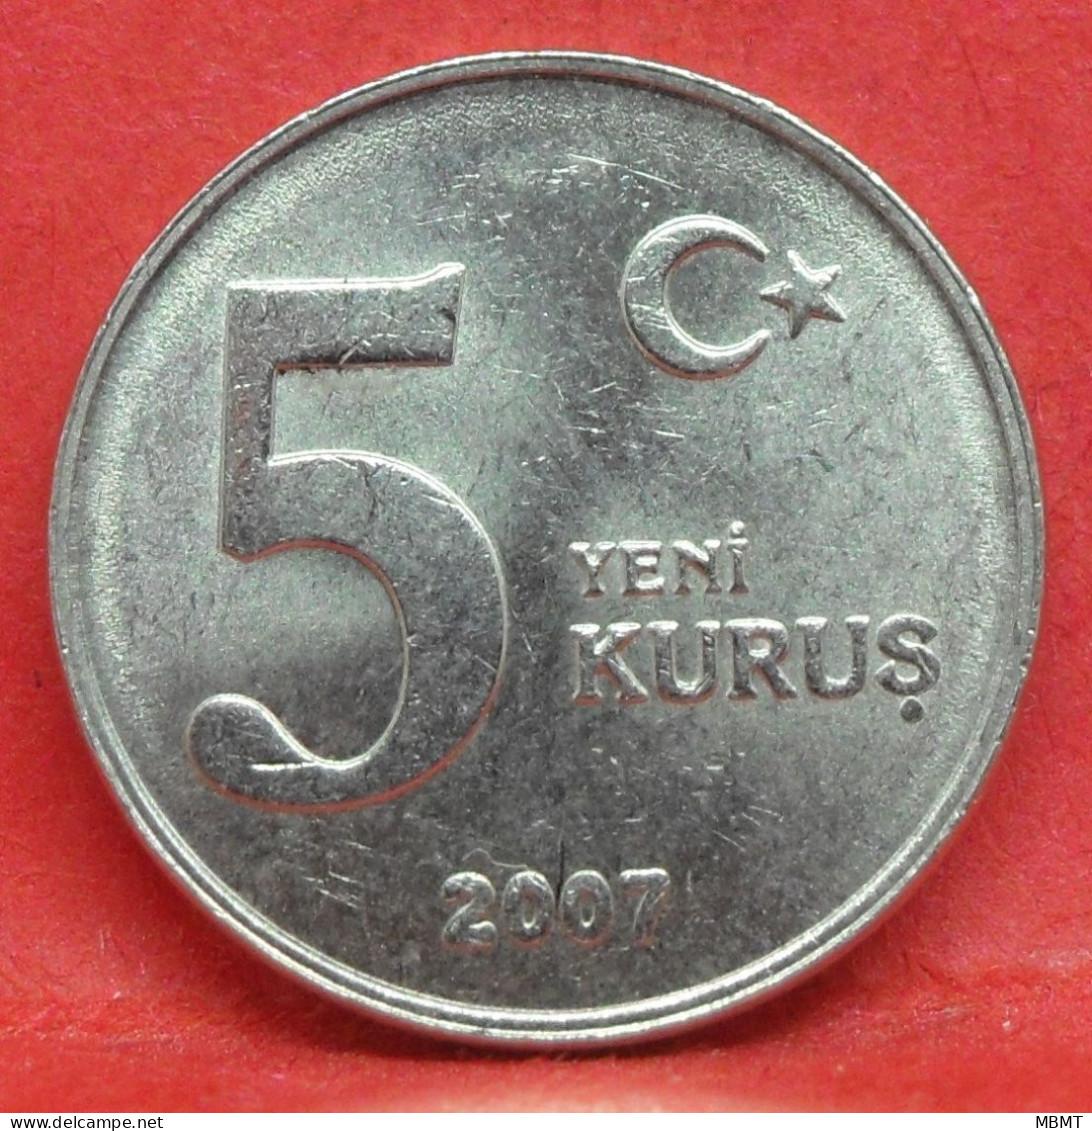 5 Kurus 2007 - TTB - Pièce De Monnaie Turquie - Article N°4955 - Turquie